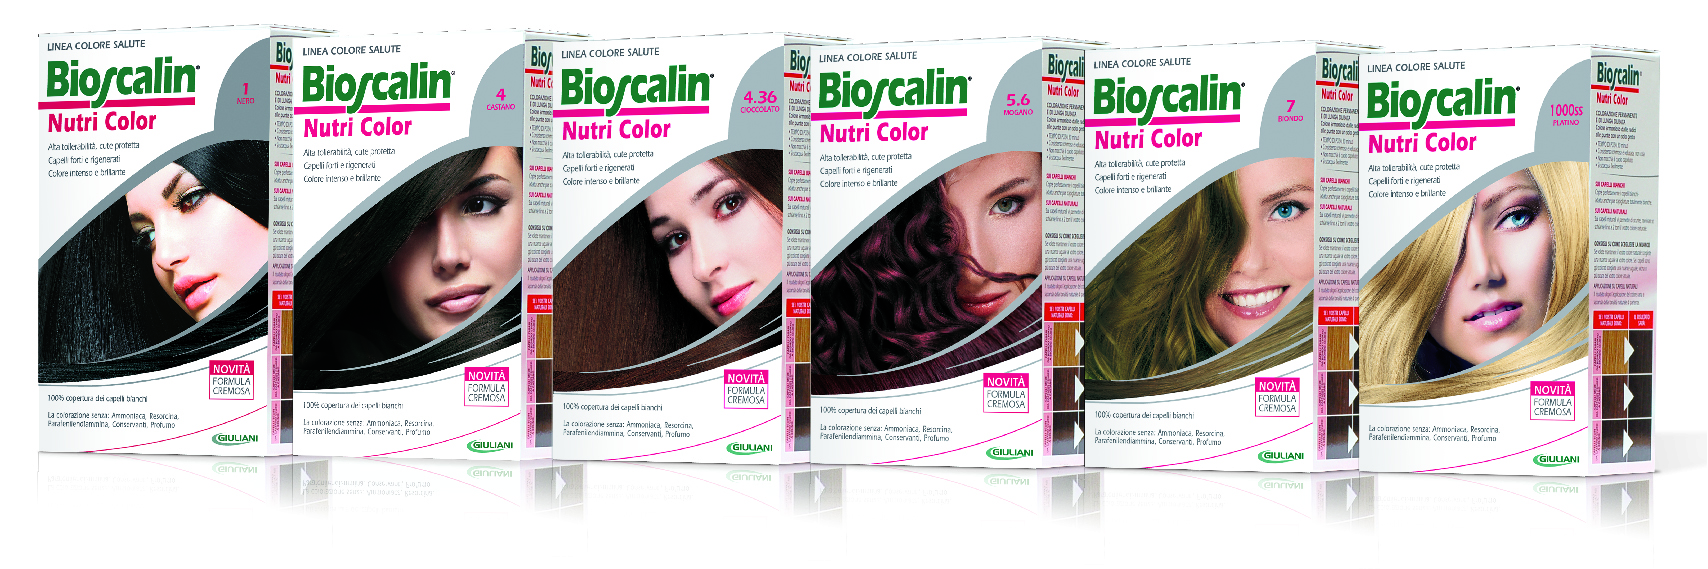 Bioscalin® Nutri Color Balsamo, il trattamento anti-caduta che rispetta il capello